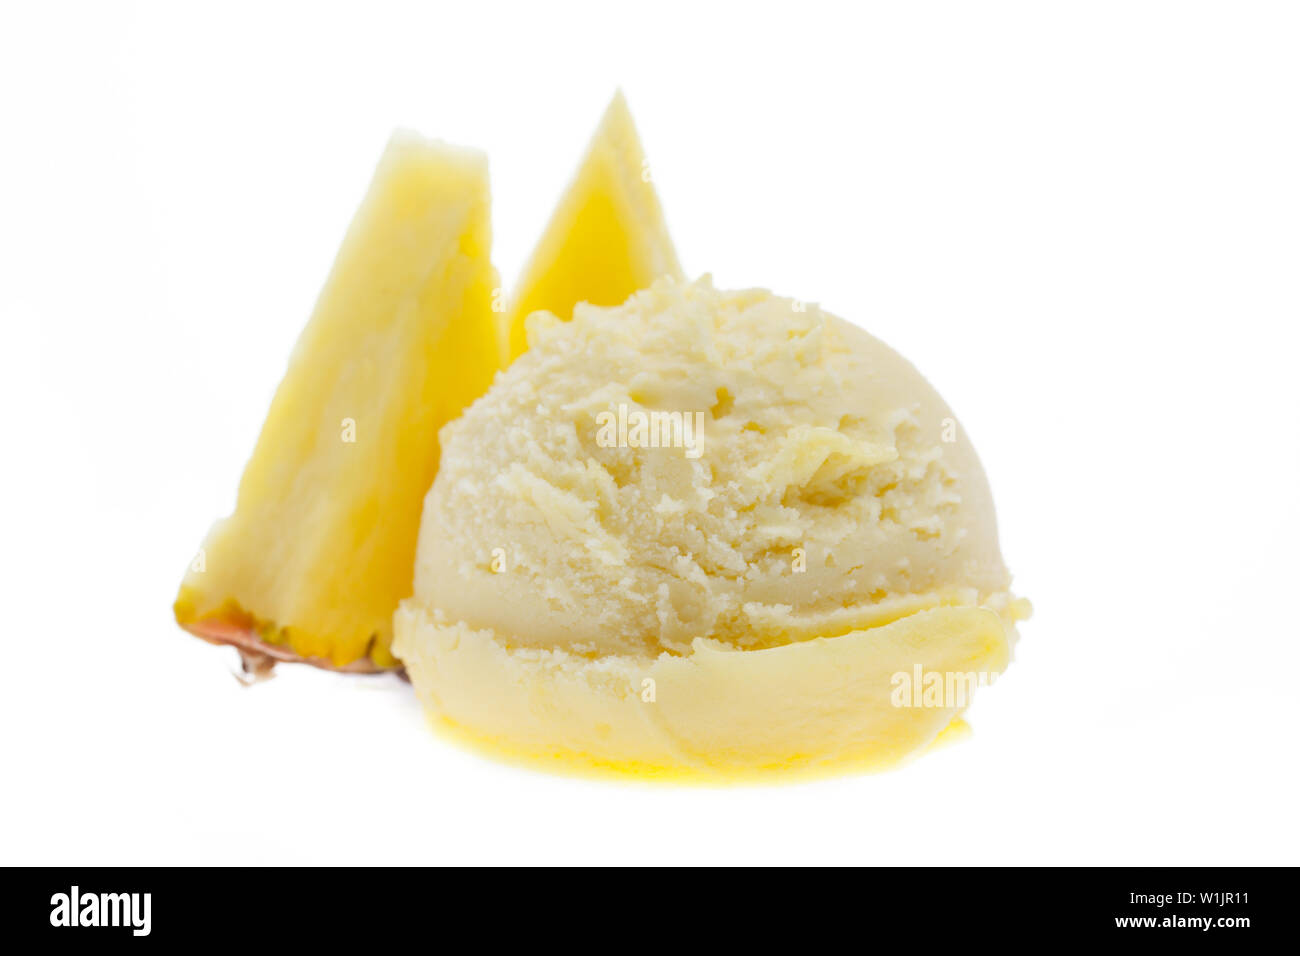 Eine Kugel Eis mit Ananas Stücke Ananas von vorne Seitenansicht auf weißem Hintergrund Stockfoto